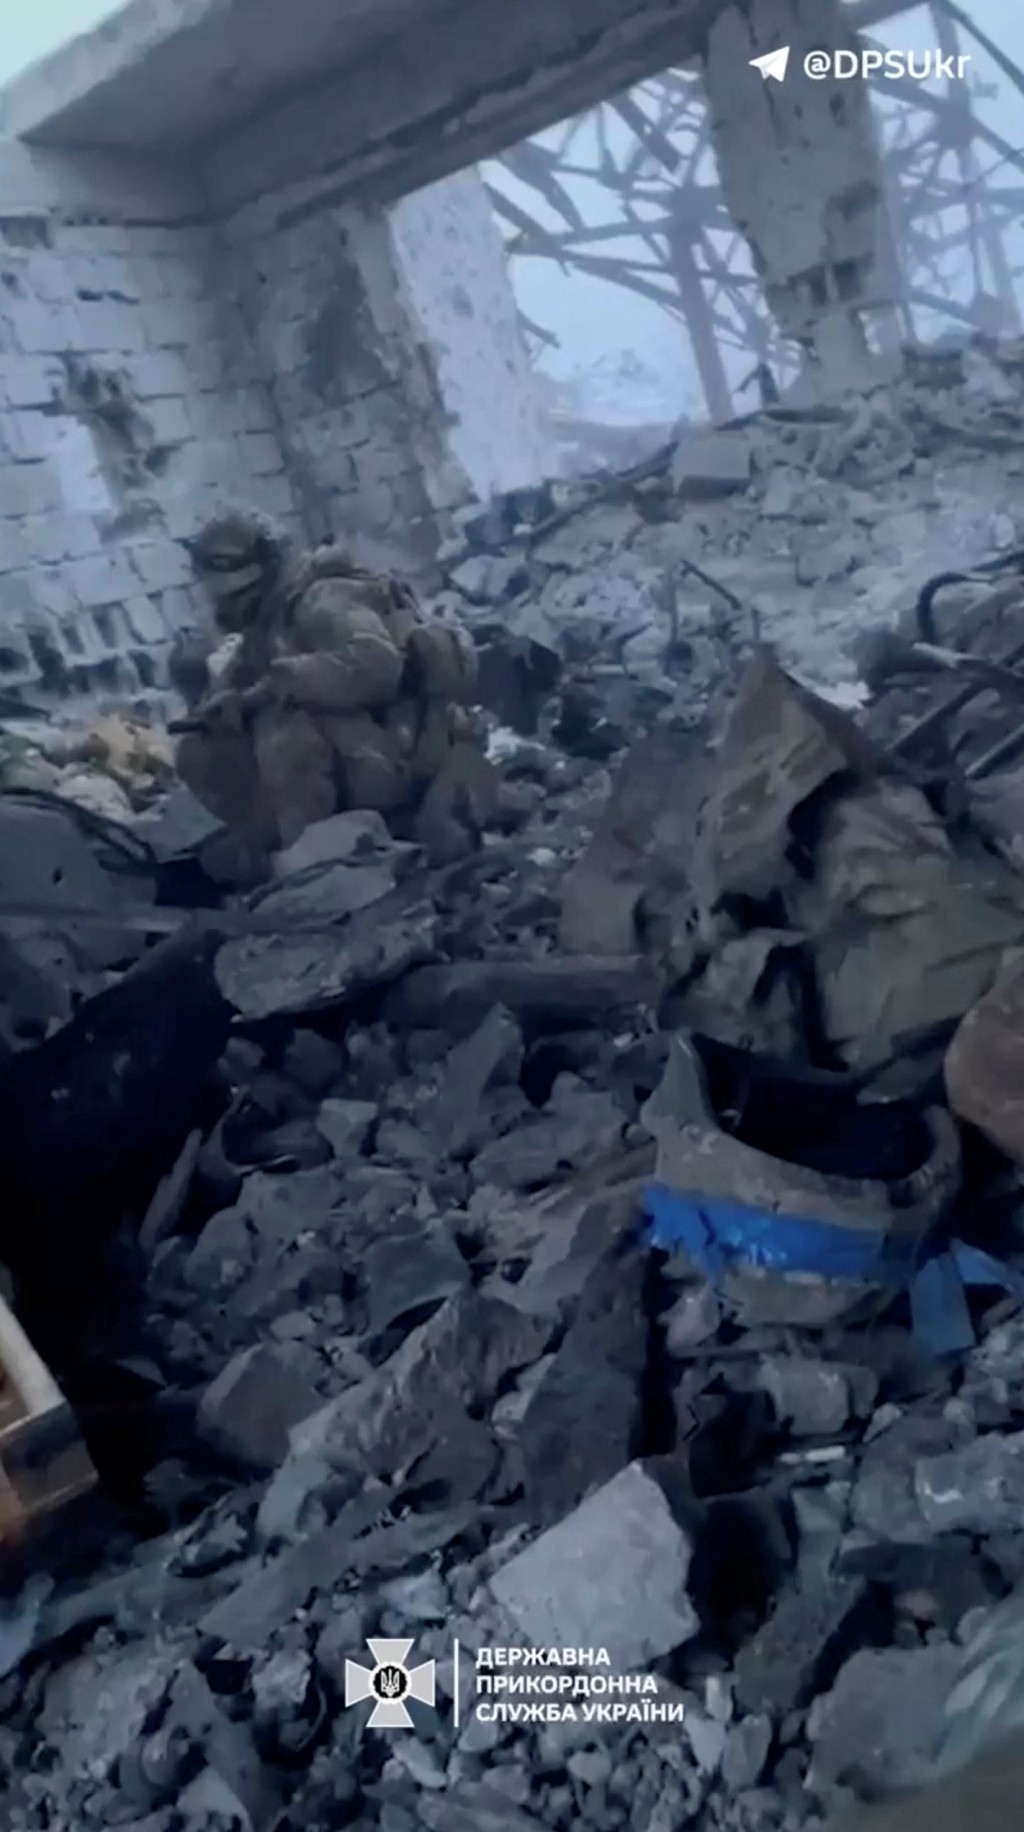 乌克兰士兵坐在几乎全毁的建筑物瓦砾中。 路透社